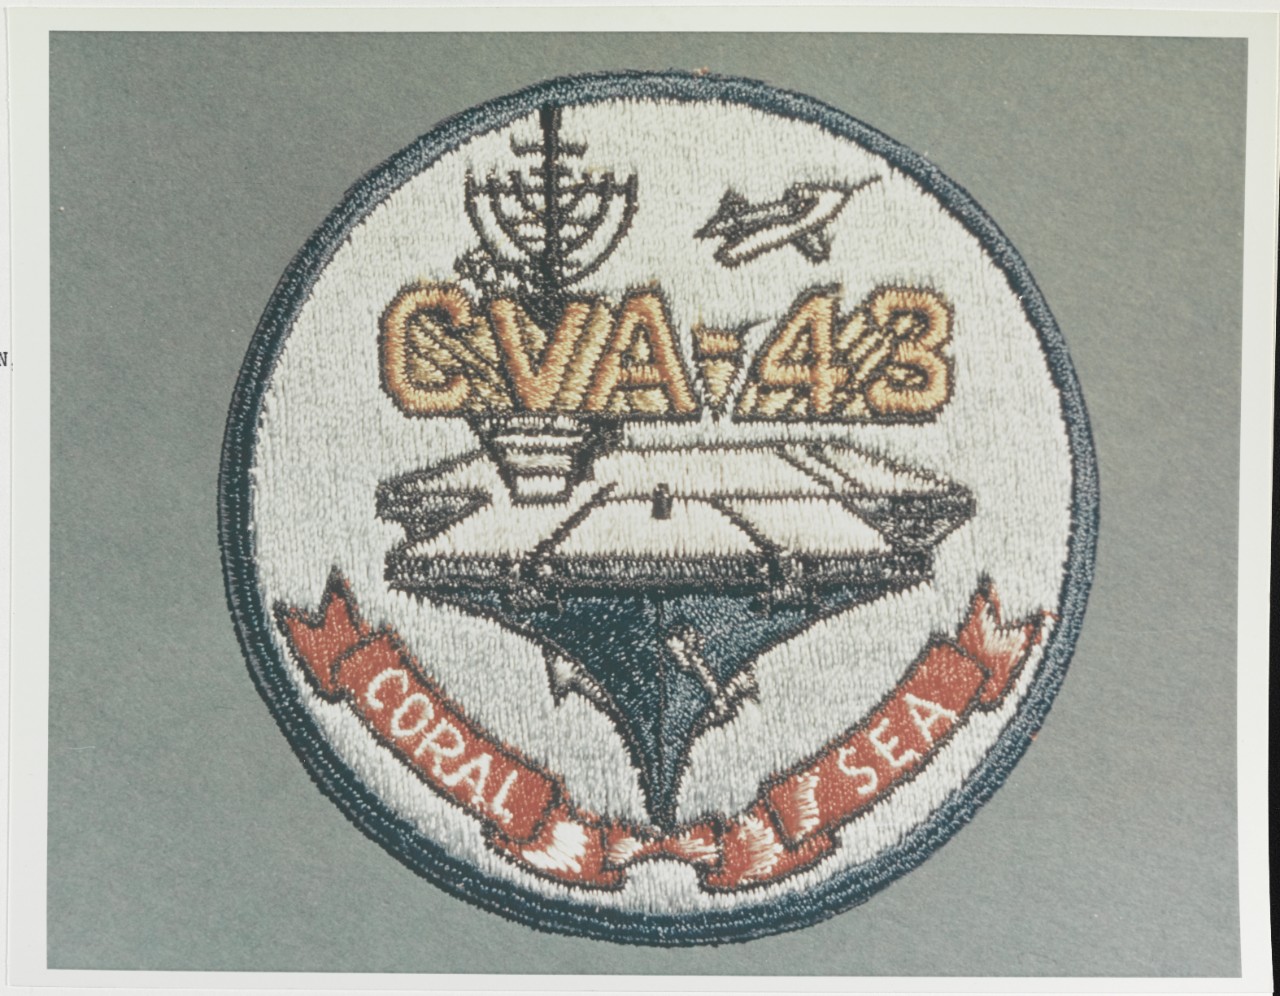 Insignia: USS CORAL SEA (CVA-43)